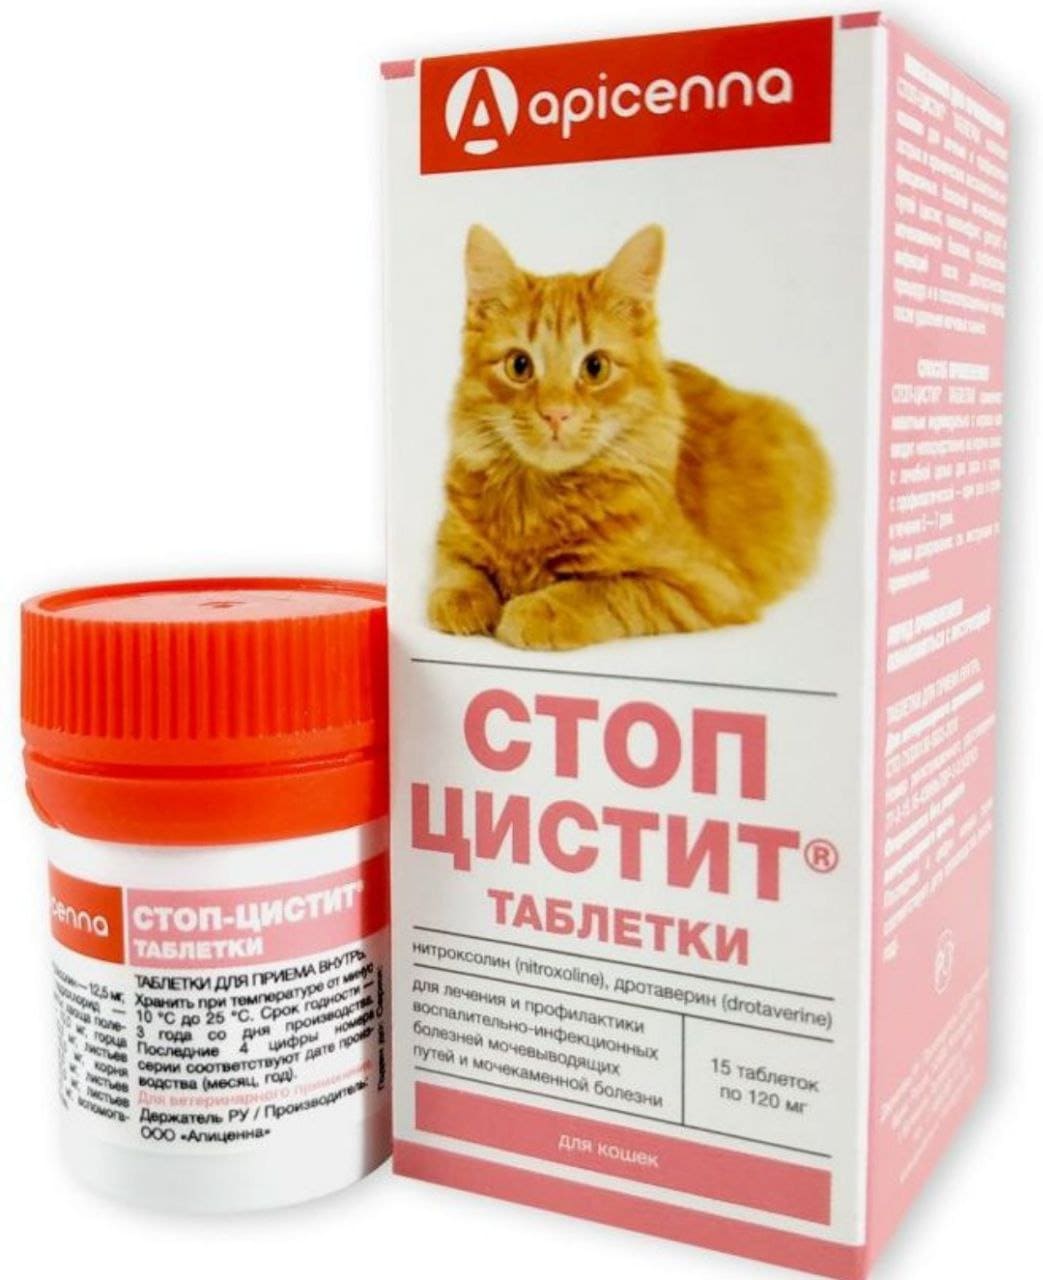 Купить лекарства кошки. Стоп-цистит таблетки для кошек, apicenna, 500 мг*30 таб. Стоп цистит био для кошек таблетки. Стоп-цистит для кошек 30 таблетки. Стоп цистит с нитроксолином для кошек.